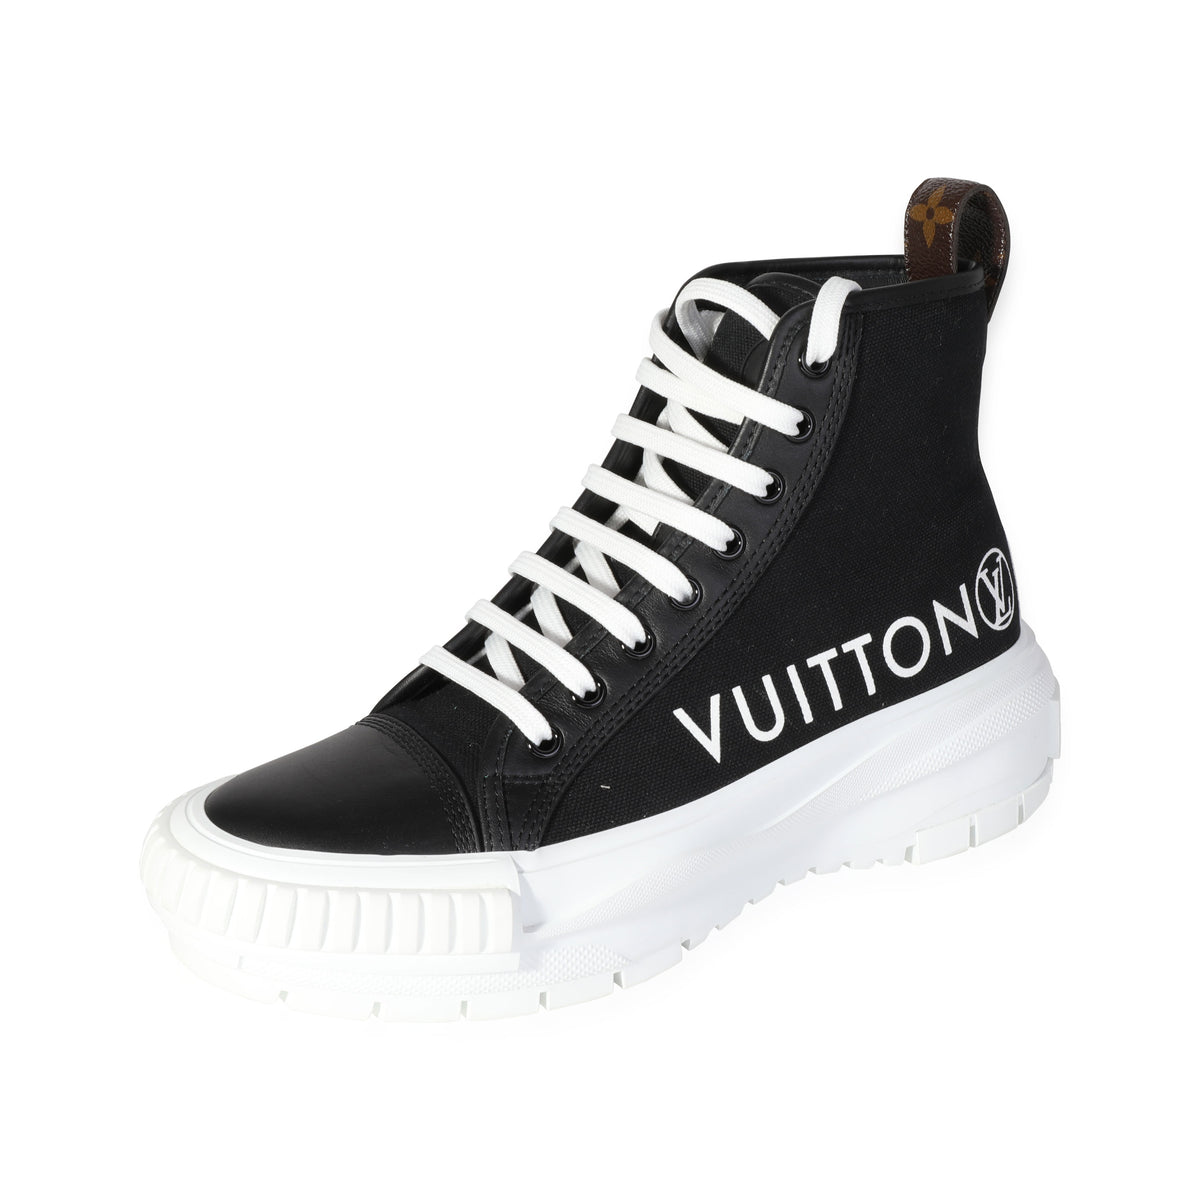 LOUIS VUITTON Canvas LV Squad Sneaker Boots 37 Black 1249507